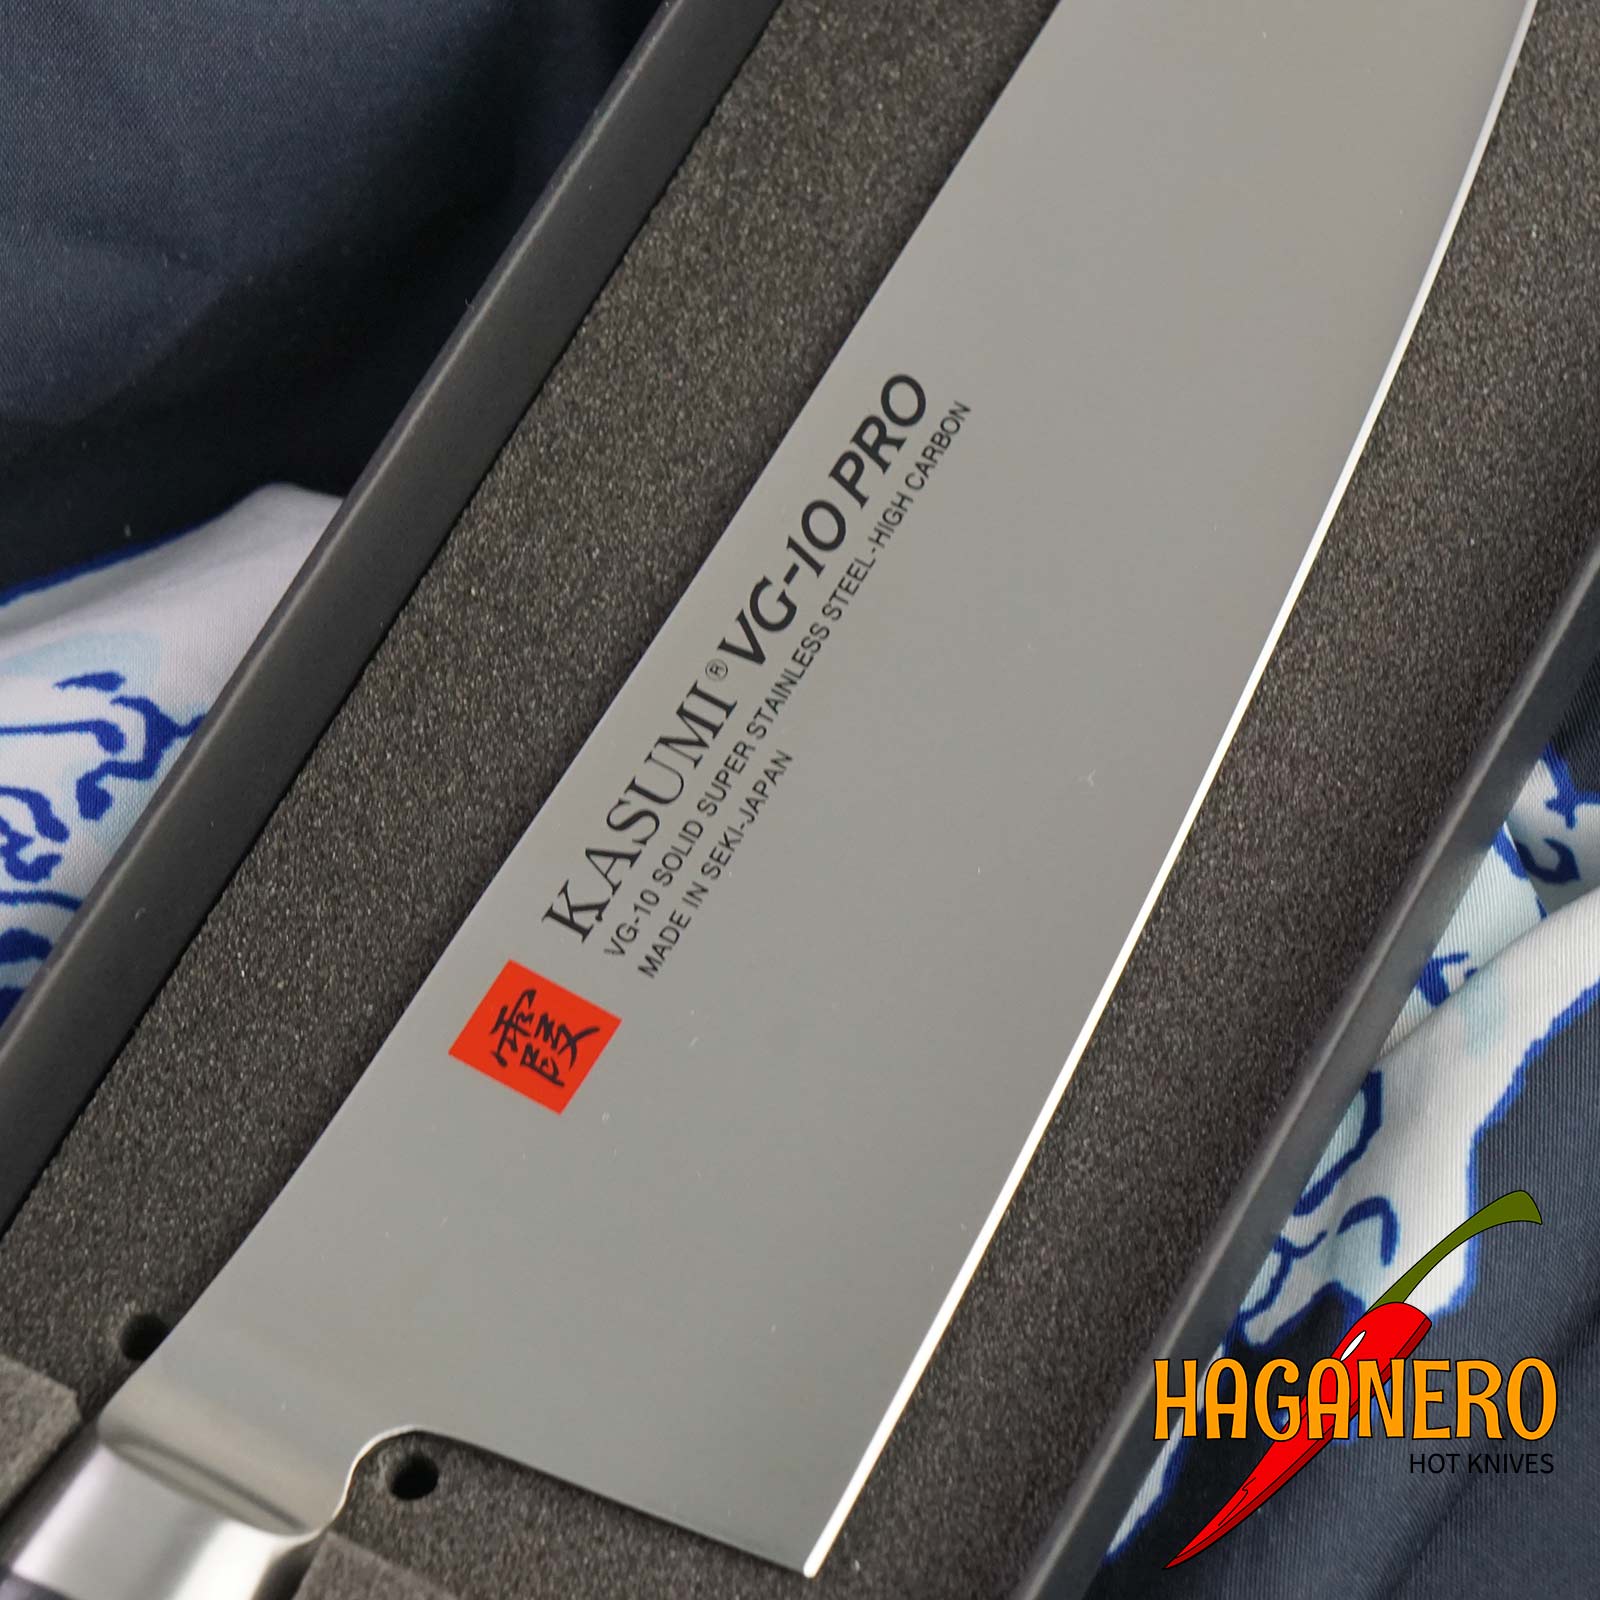 Gyuto japanisches Küchenmesser Kasumi VG10 Pro 58020 20cm